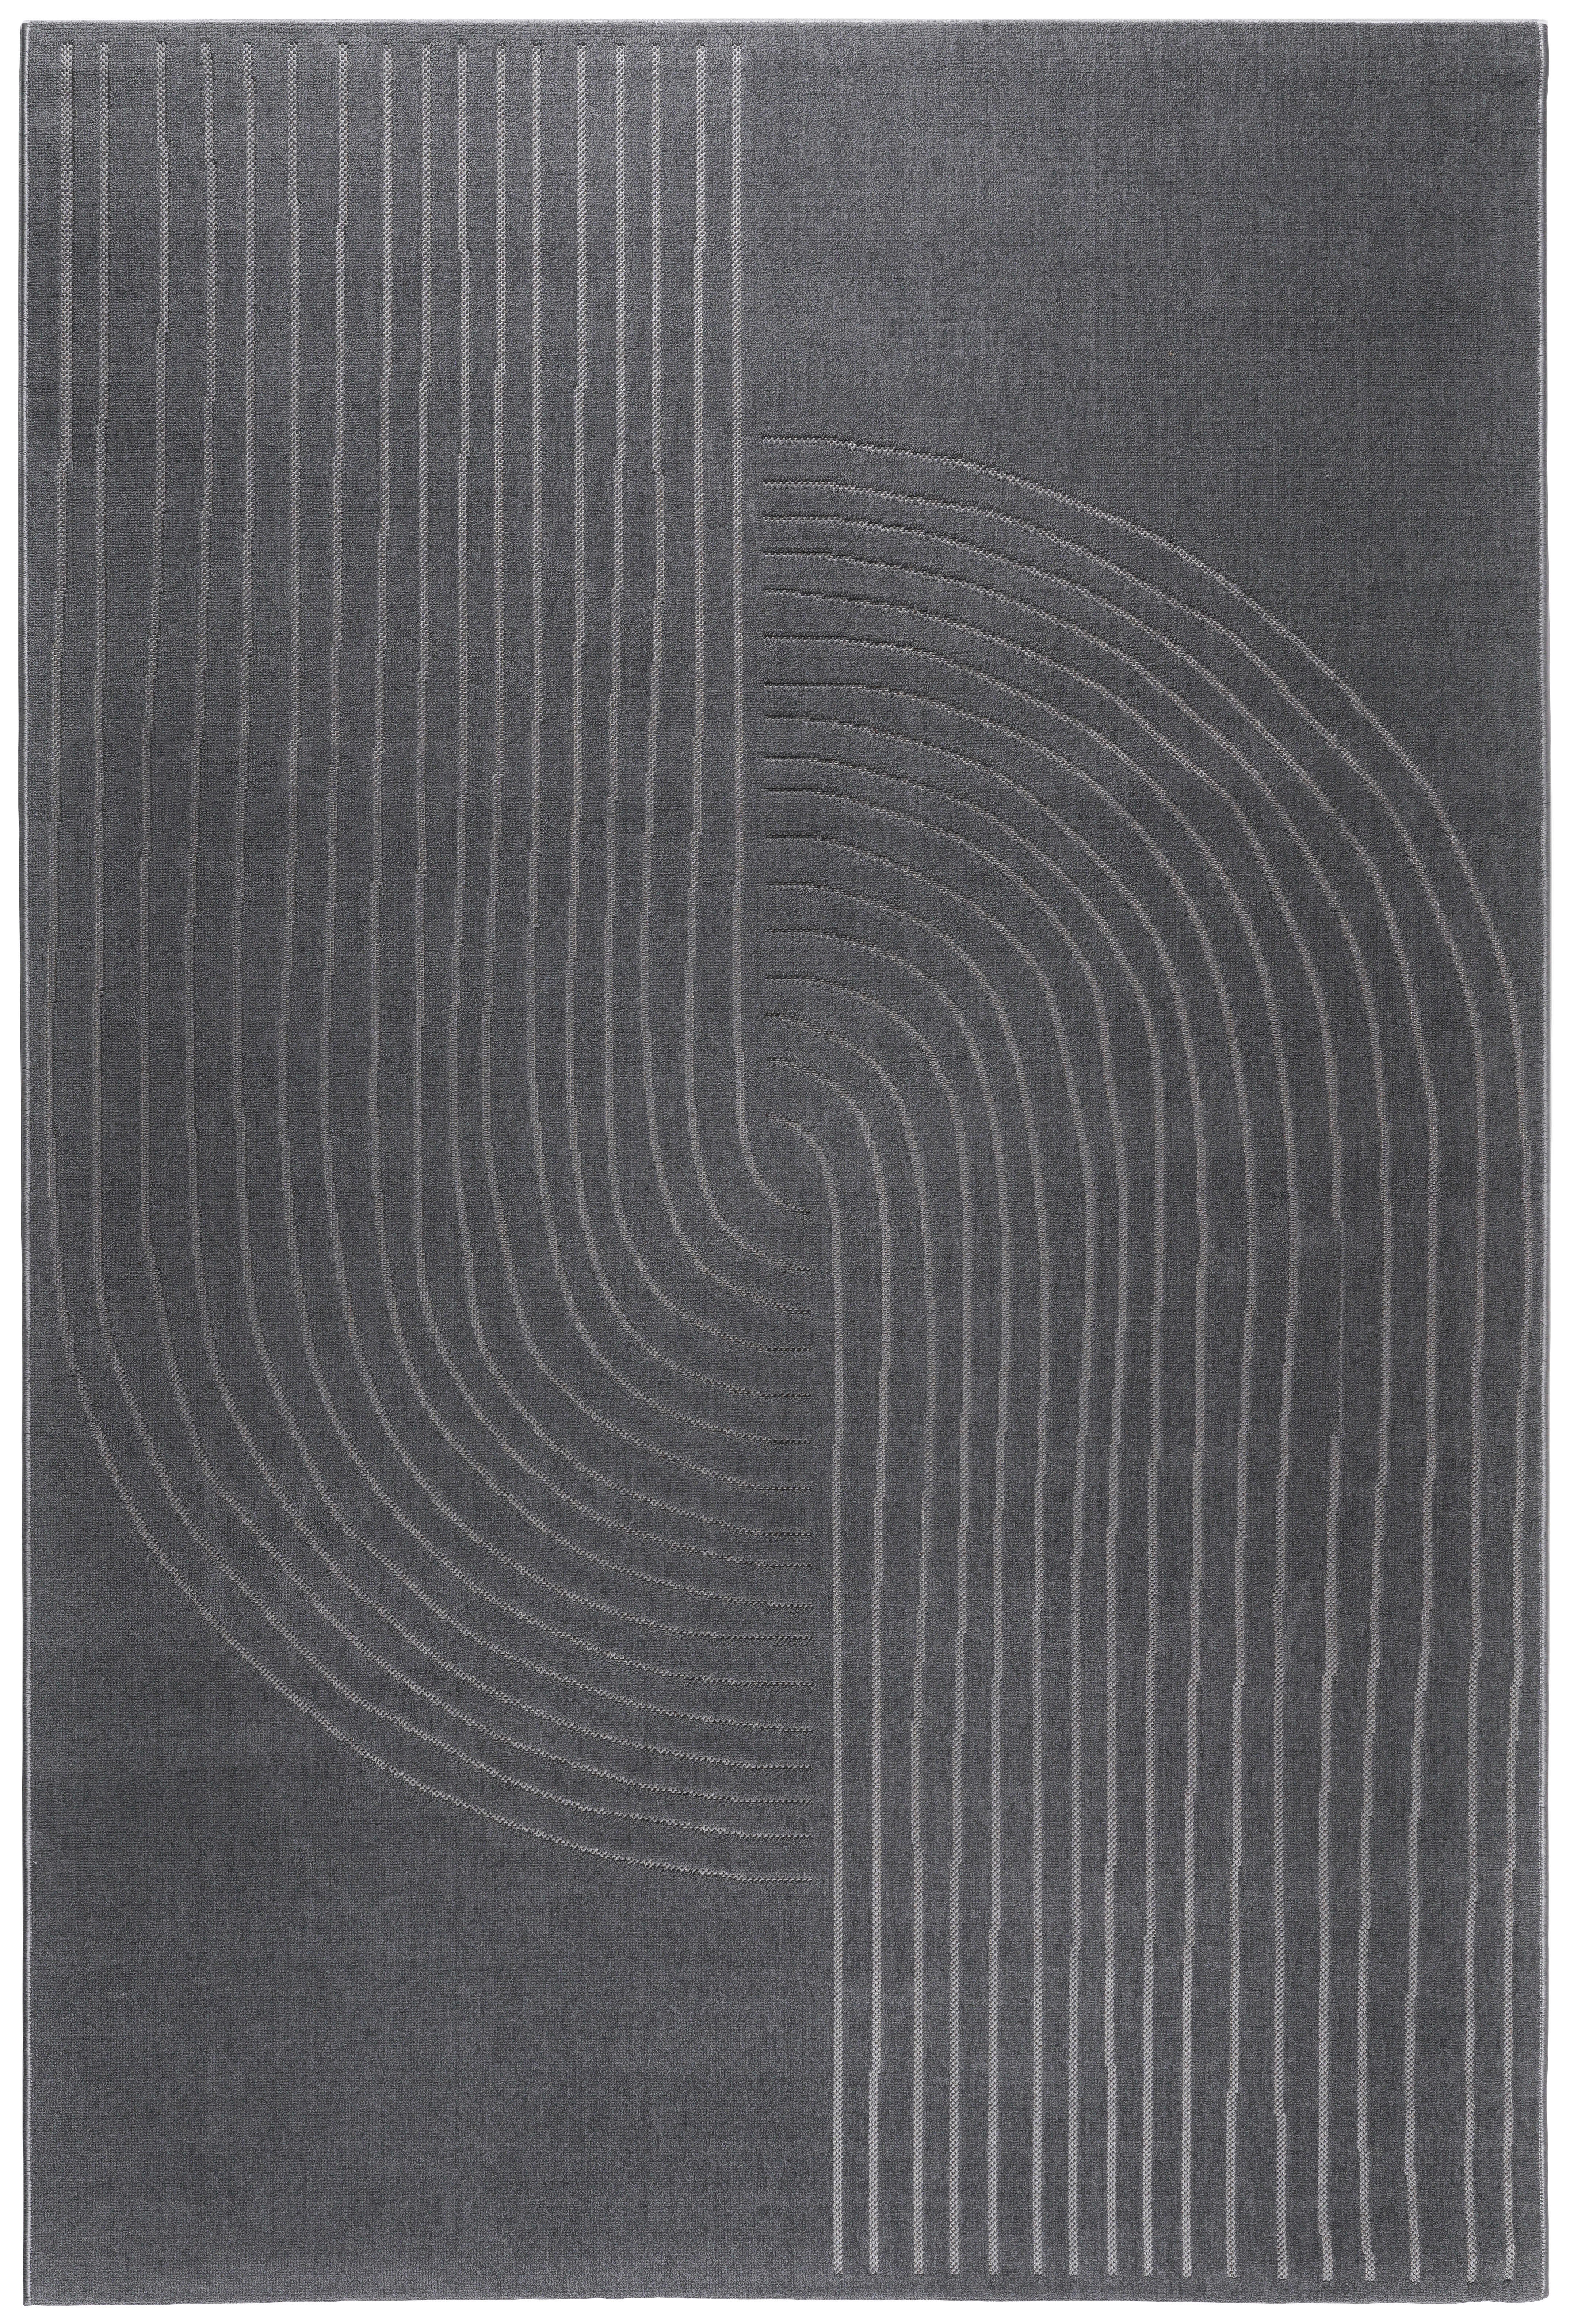 WEBTEPPICH Zen Garden  - Anthrazit, KONVENTIONELL, Textil (120/170cm) - Novel